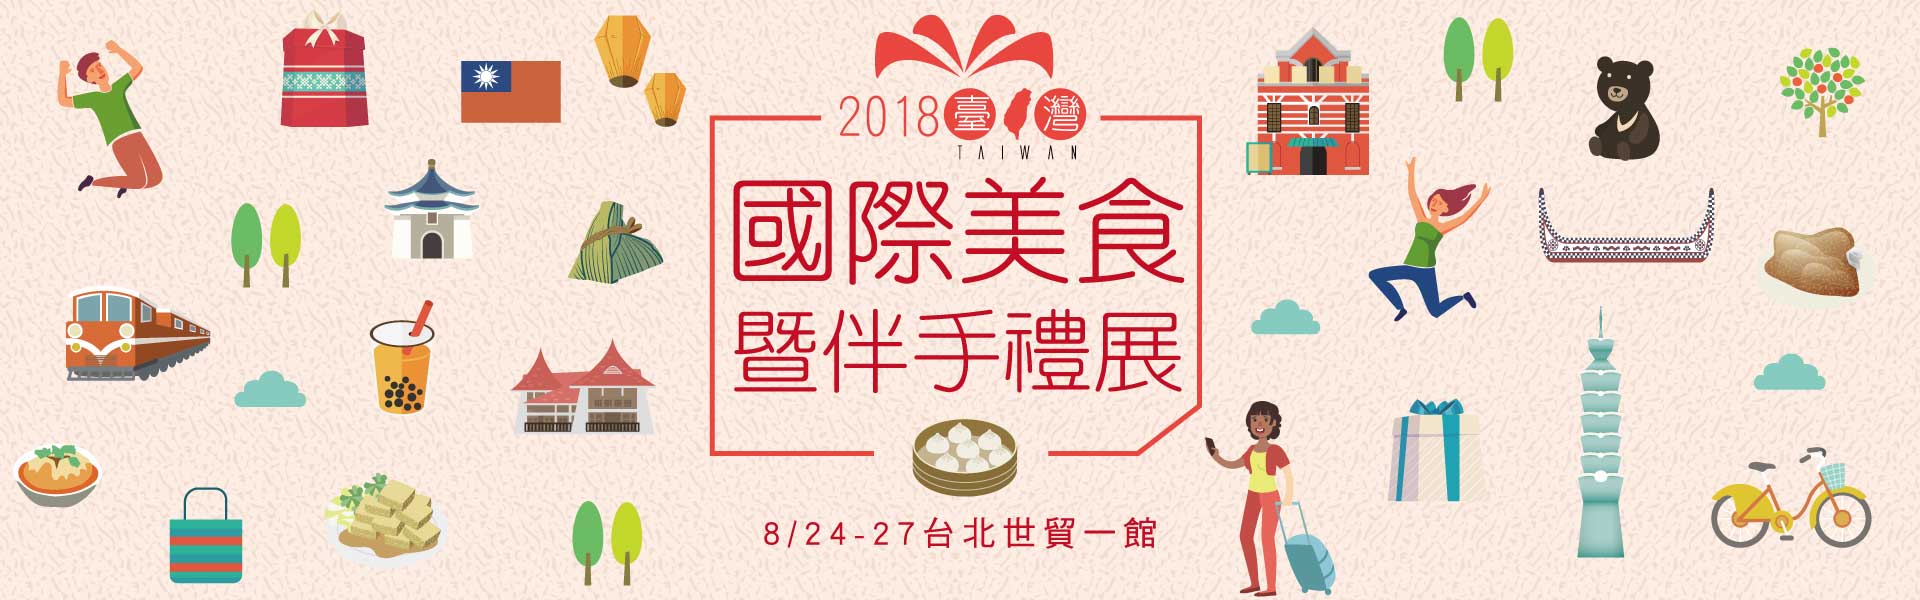 2018台灣國際美食暨伴手禮展_8/24-27世貿一館